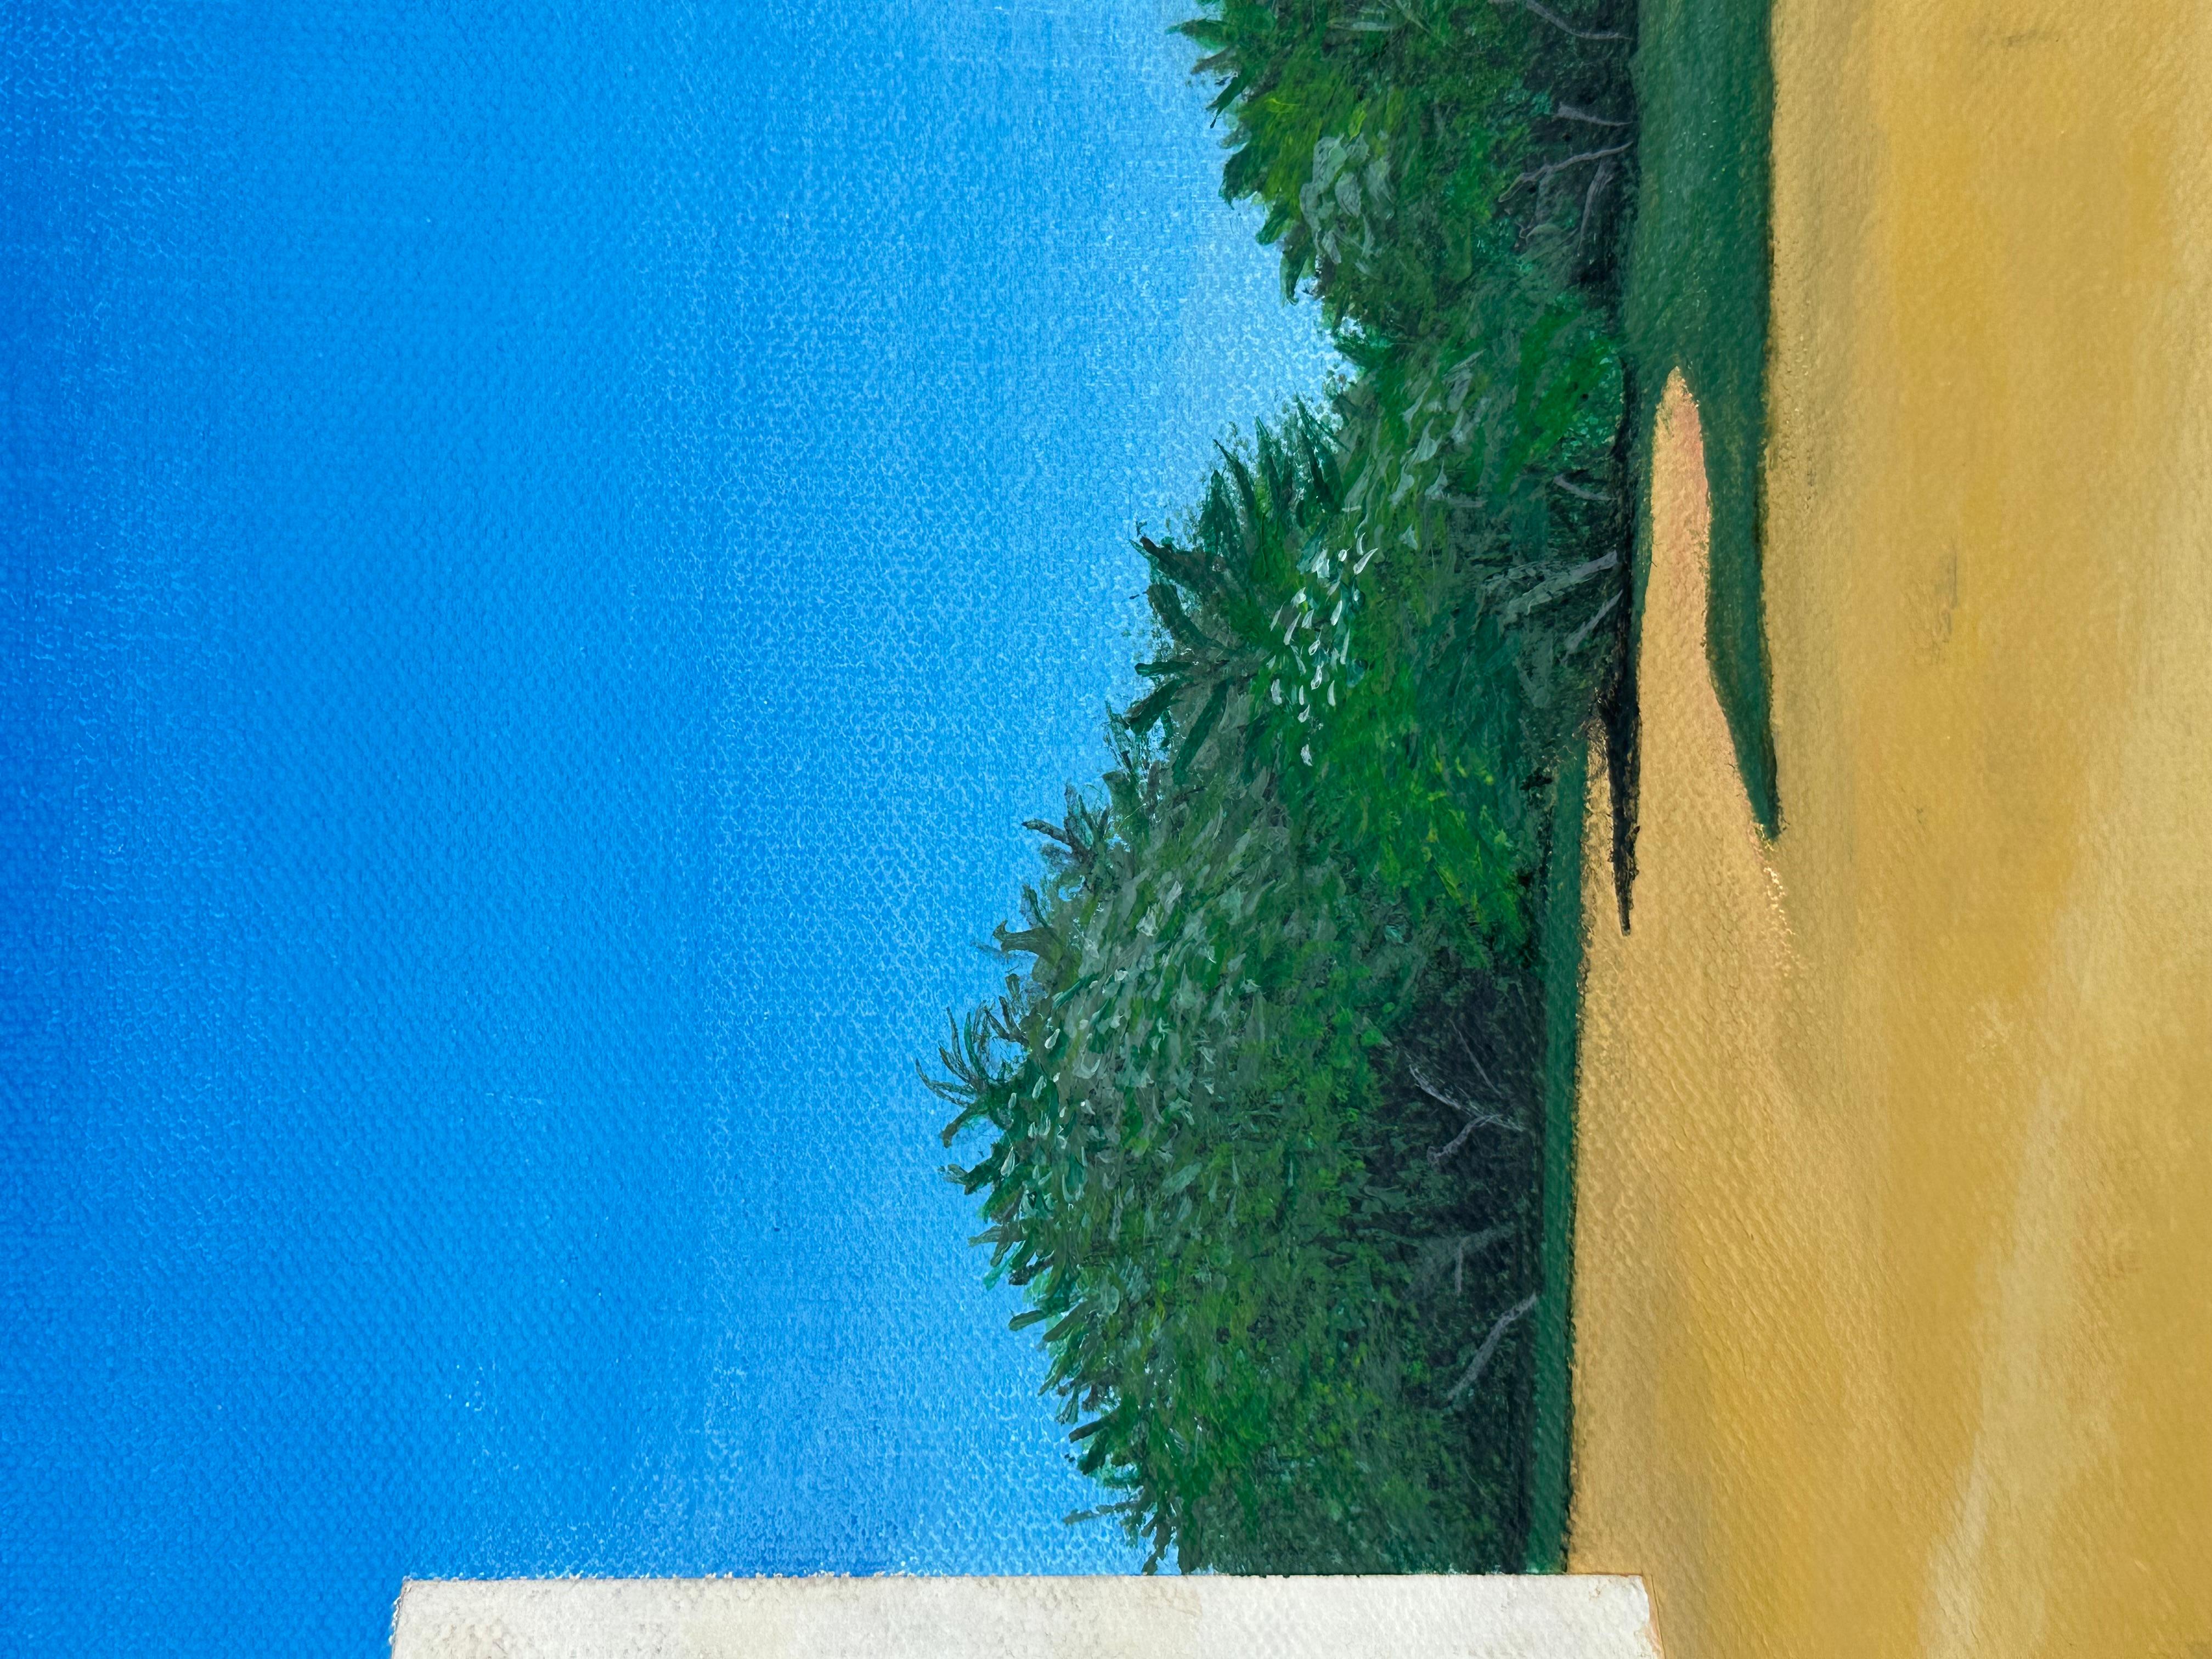 <p>Commentaires de l'artiste<br>Reprenant le projet de l'architecte portugais Alvaro Siza, une chapelle se dresse comme un bloc solide aux lignes épurées dans un paysage pittoresque. Le ciel méditerranéen d'un bleu profond se divise en grilles